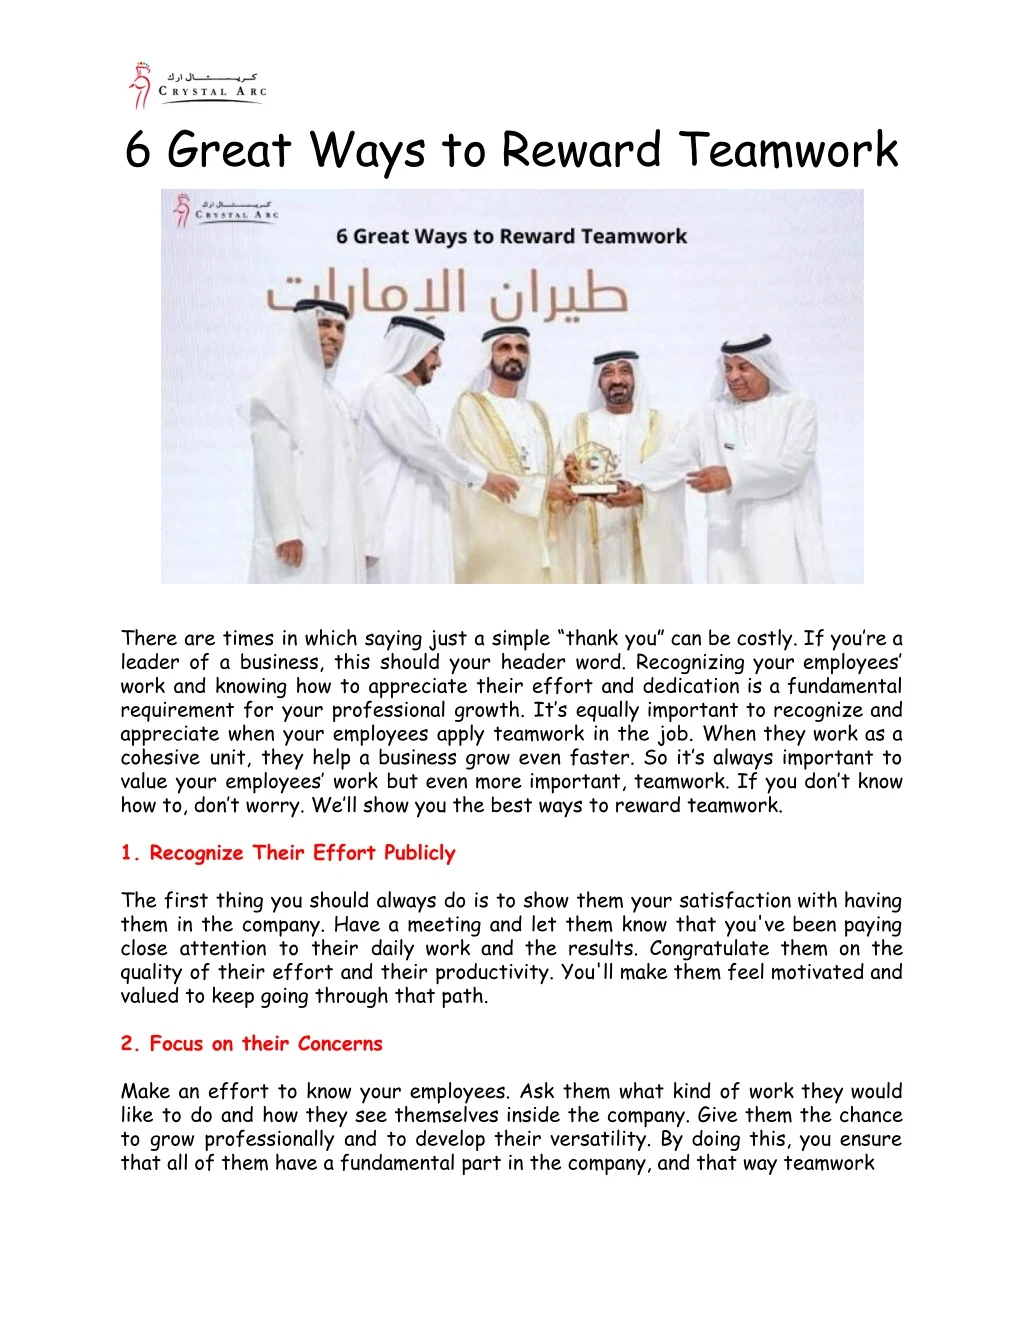 6 great ways to reward teamwork